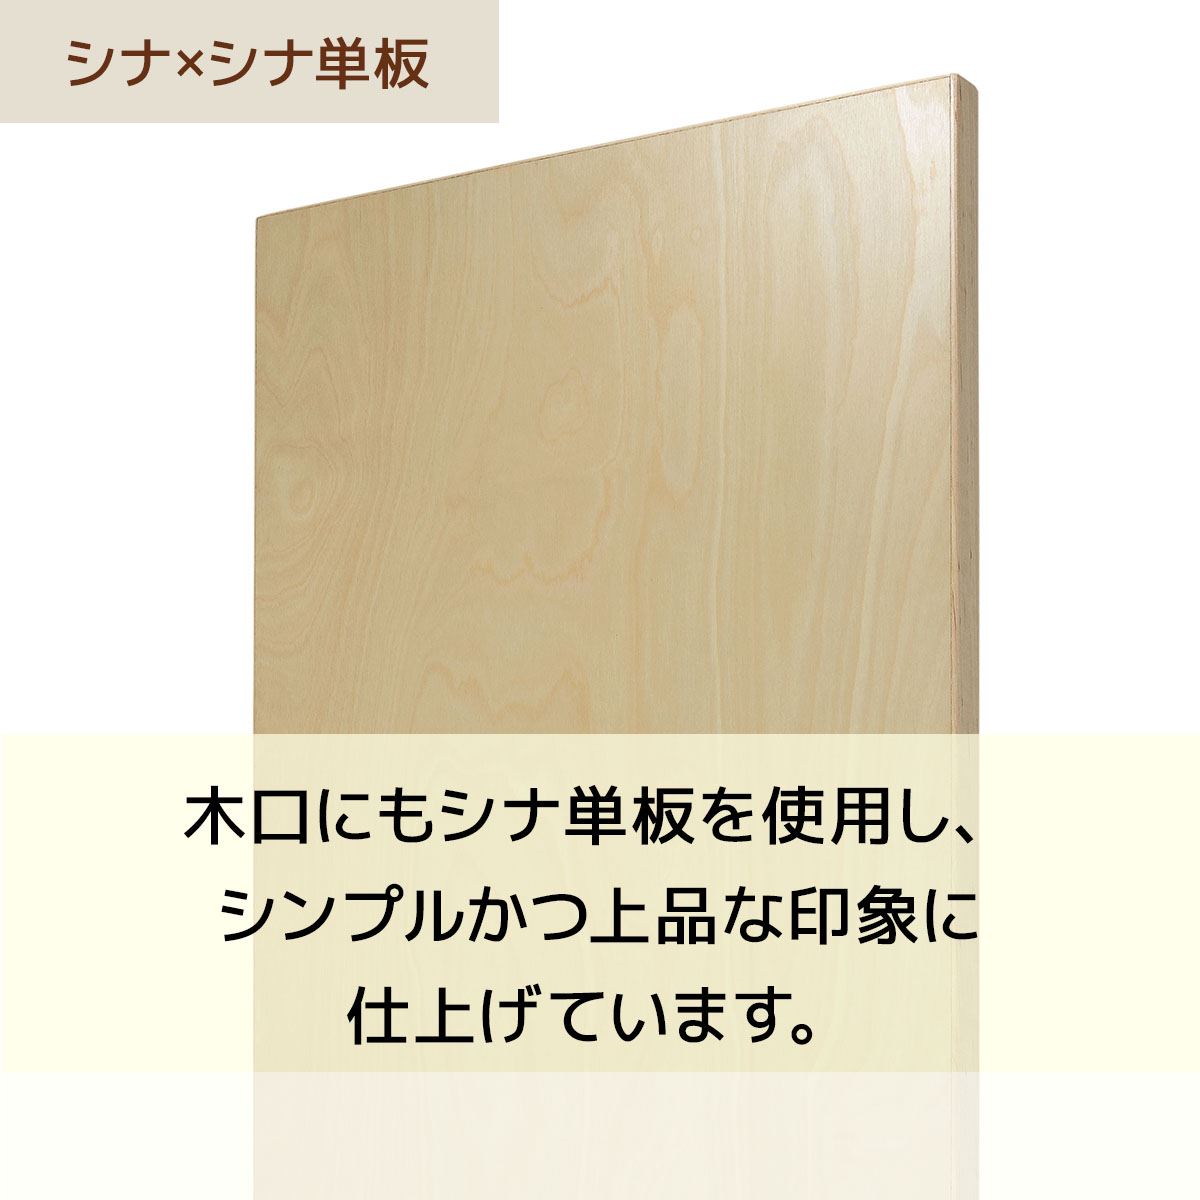 【オープニング大セール】 木棚セットW120×D40cmアンティークホワイト